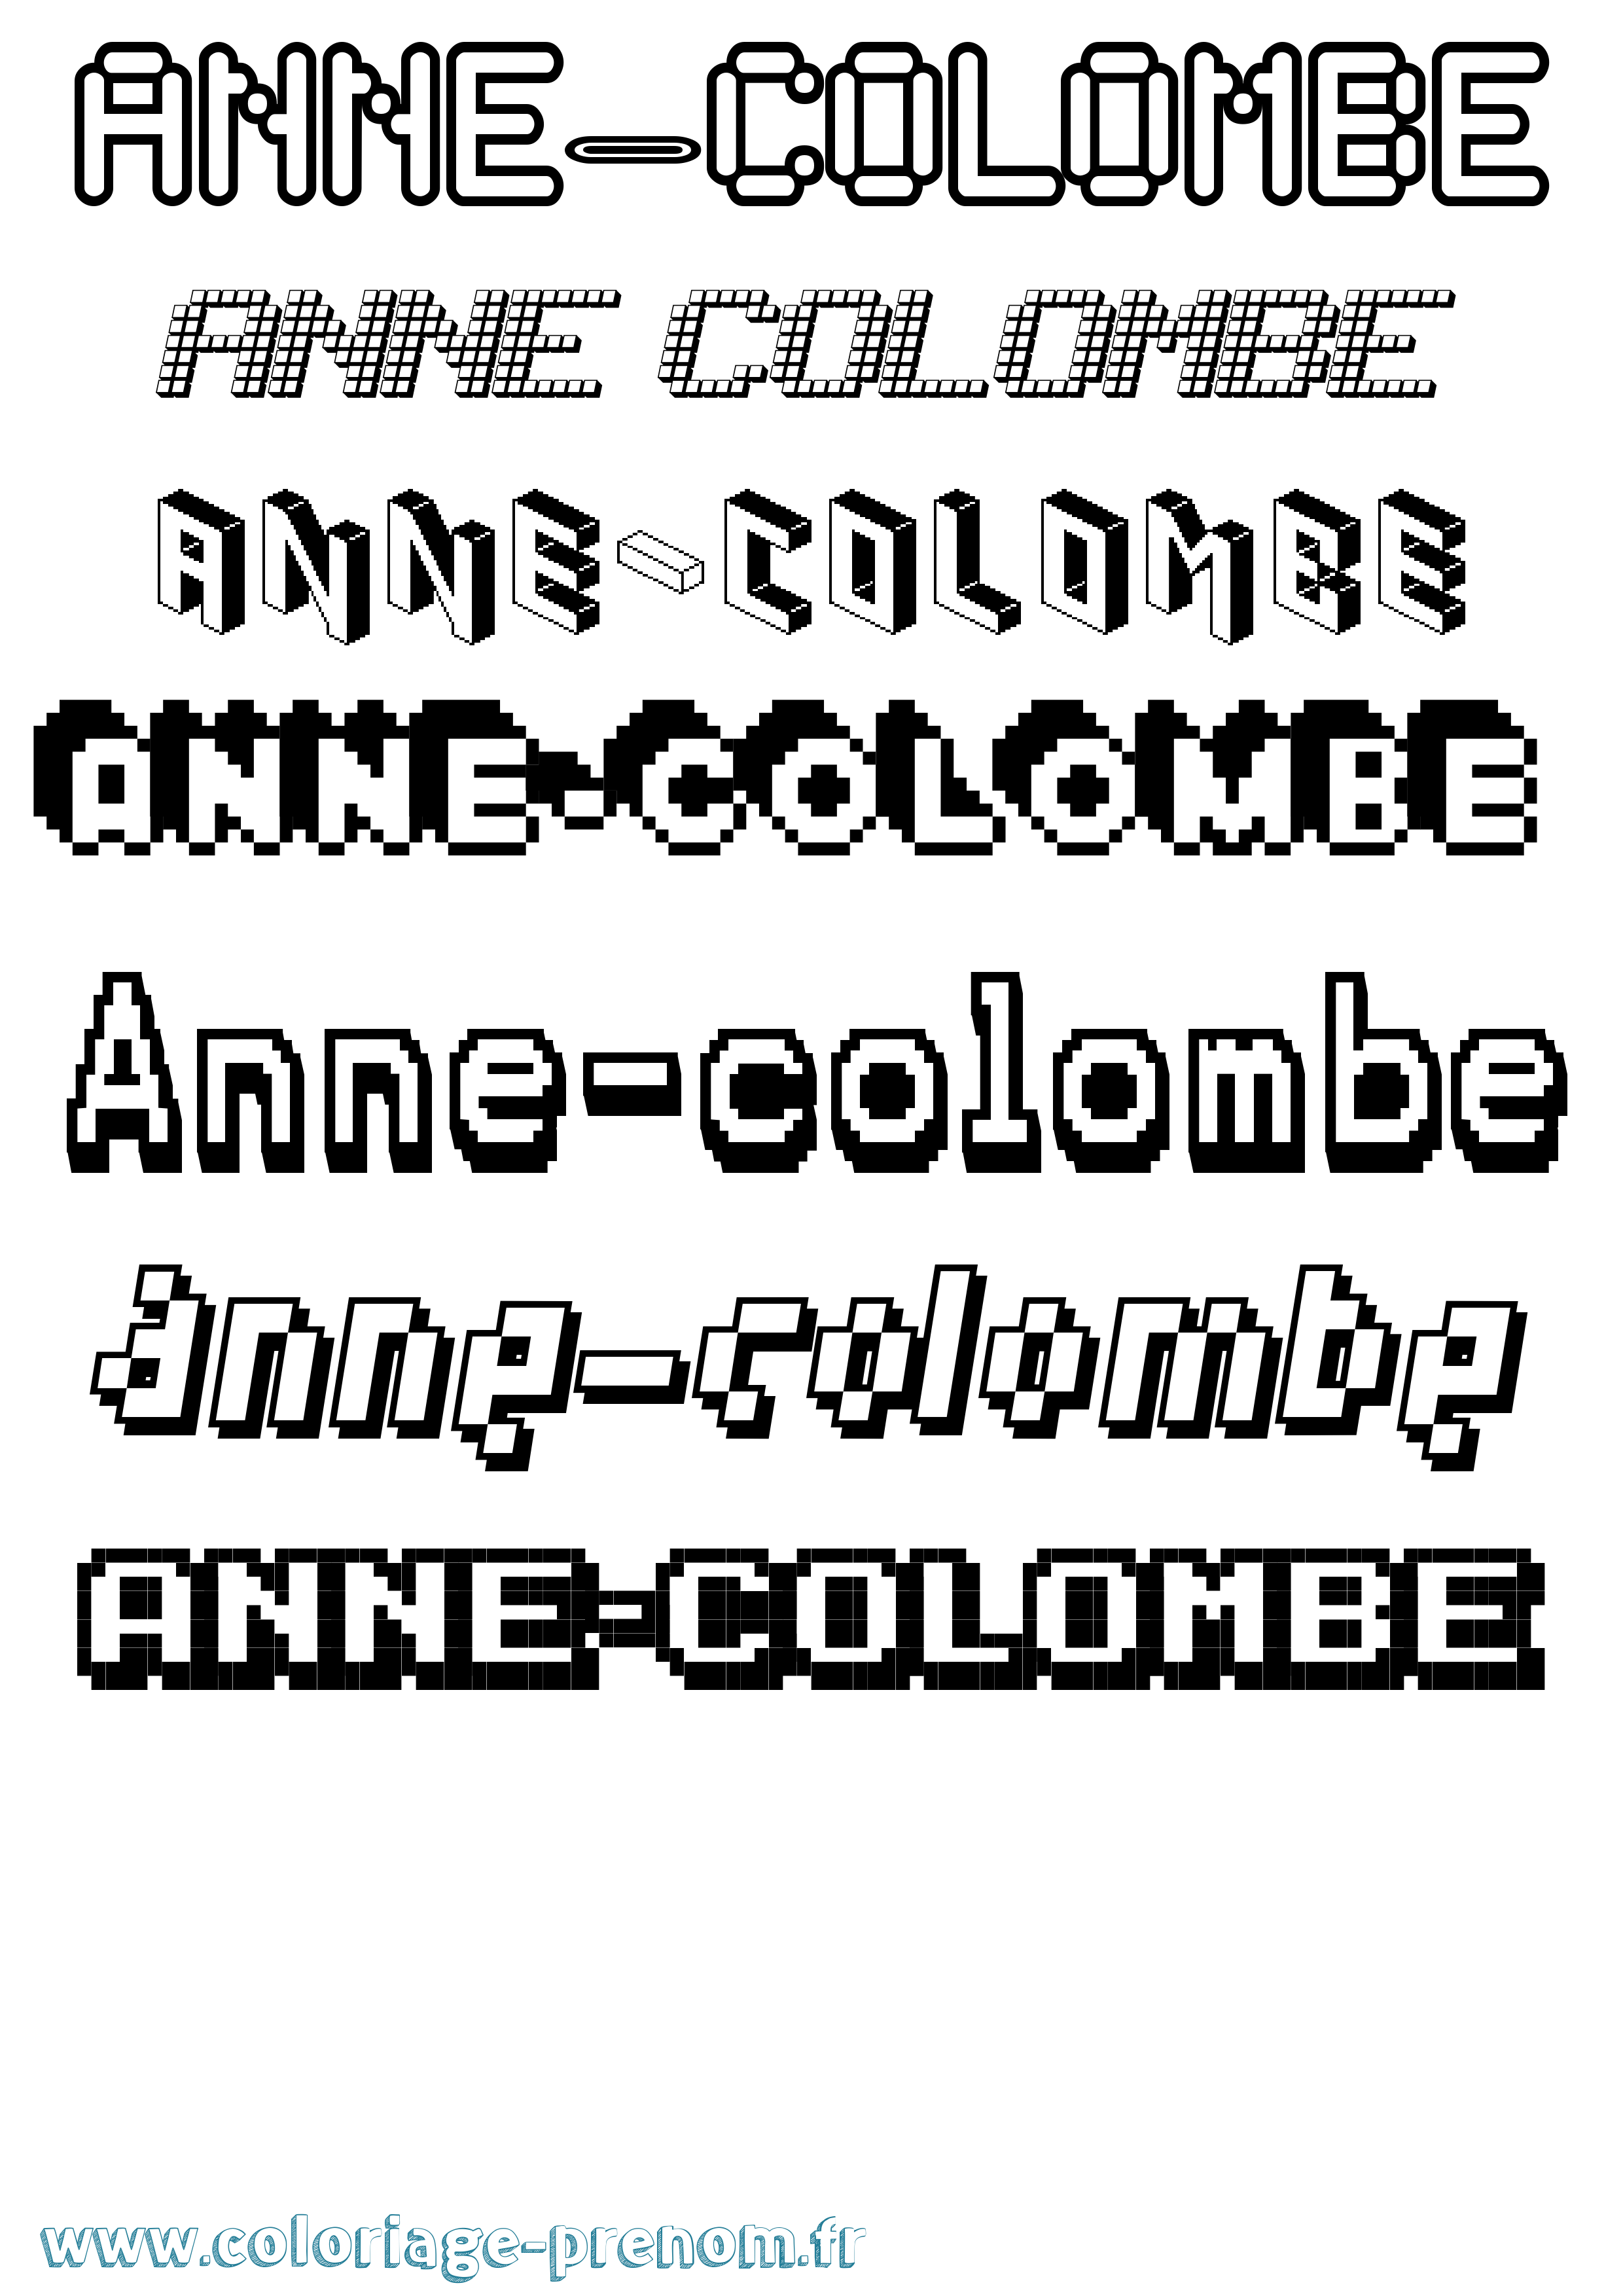 Coloriage prénom Anne-Colombe Pixel